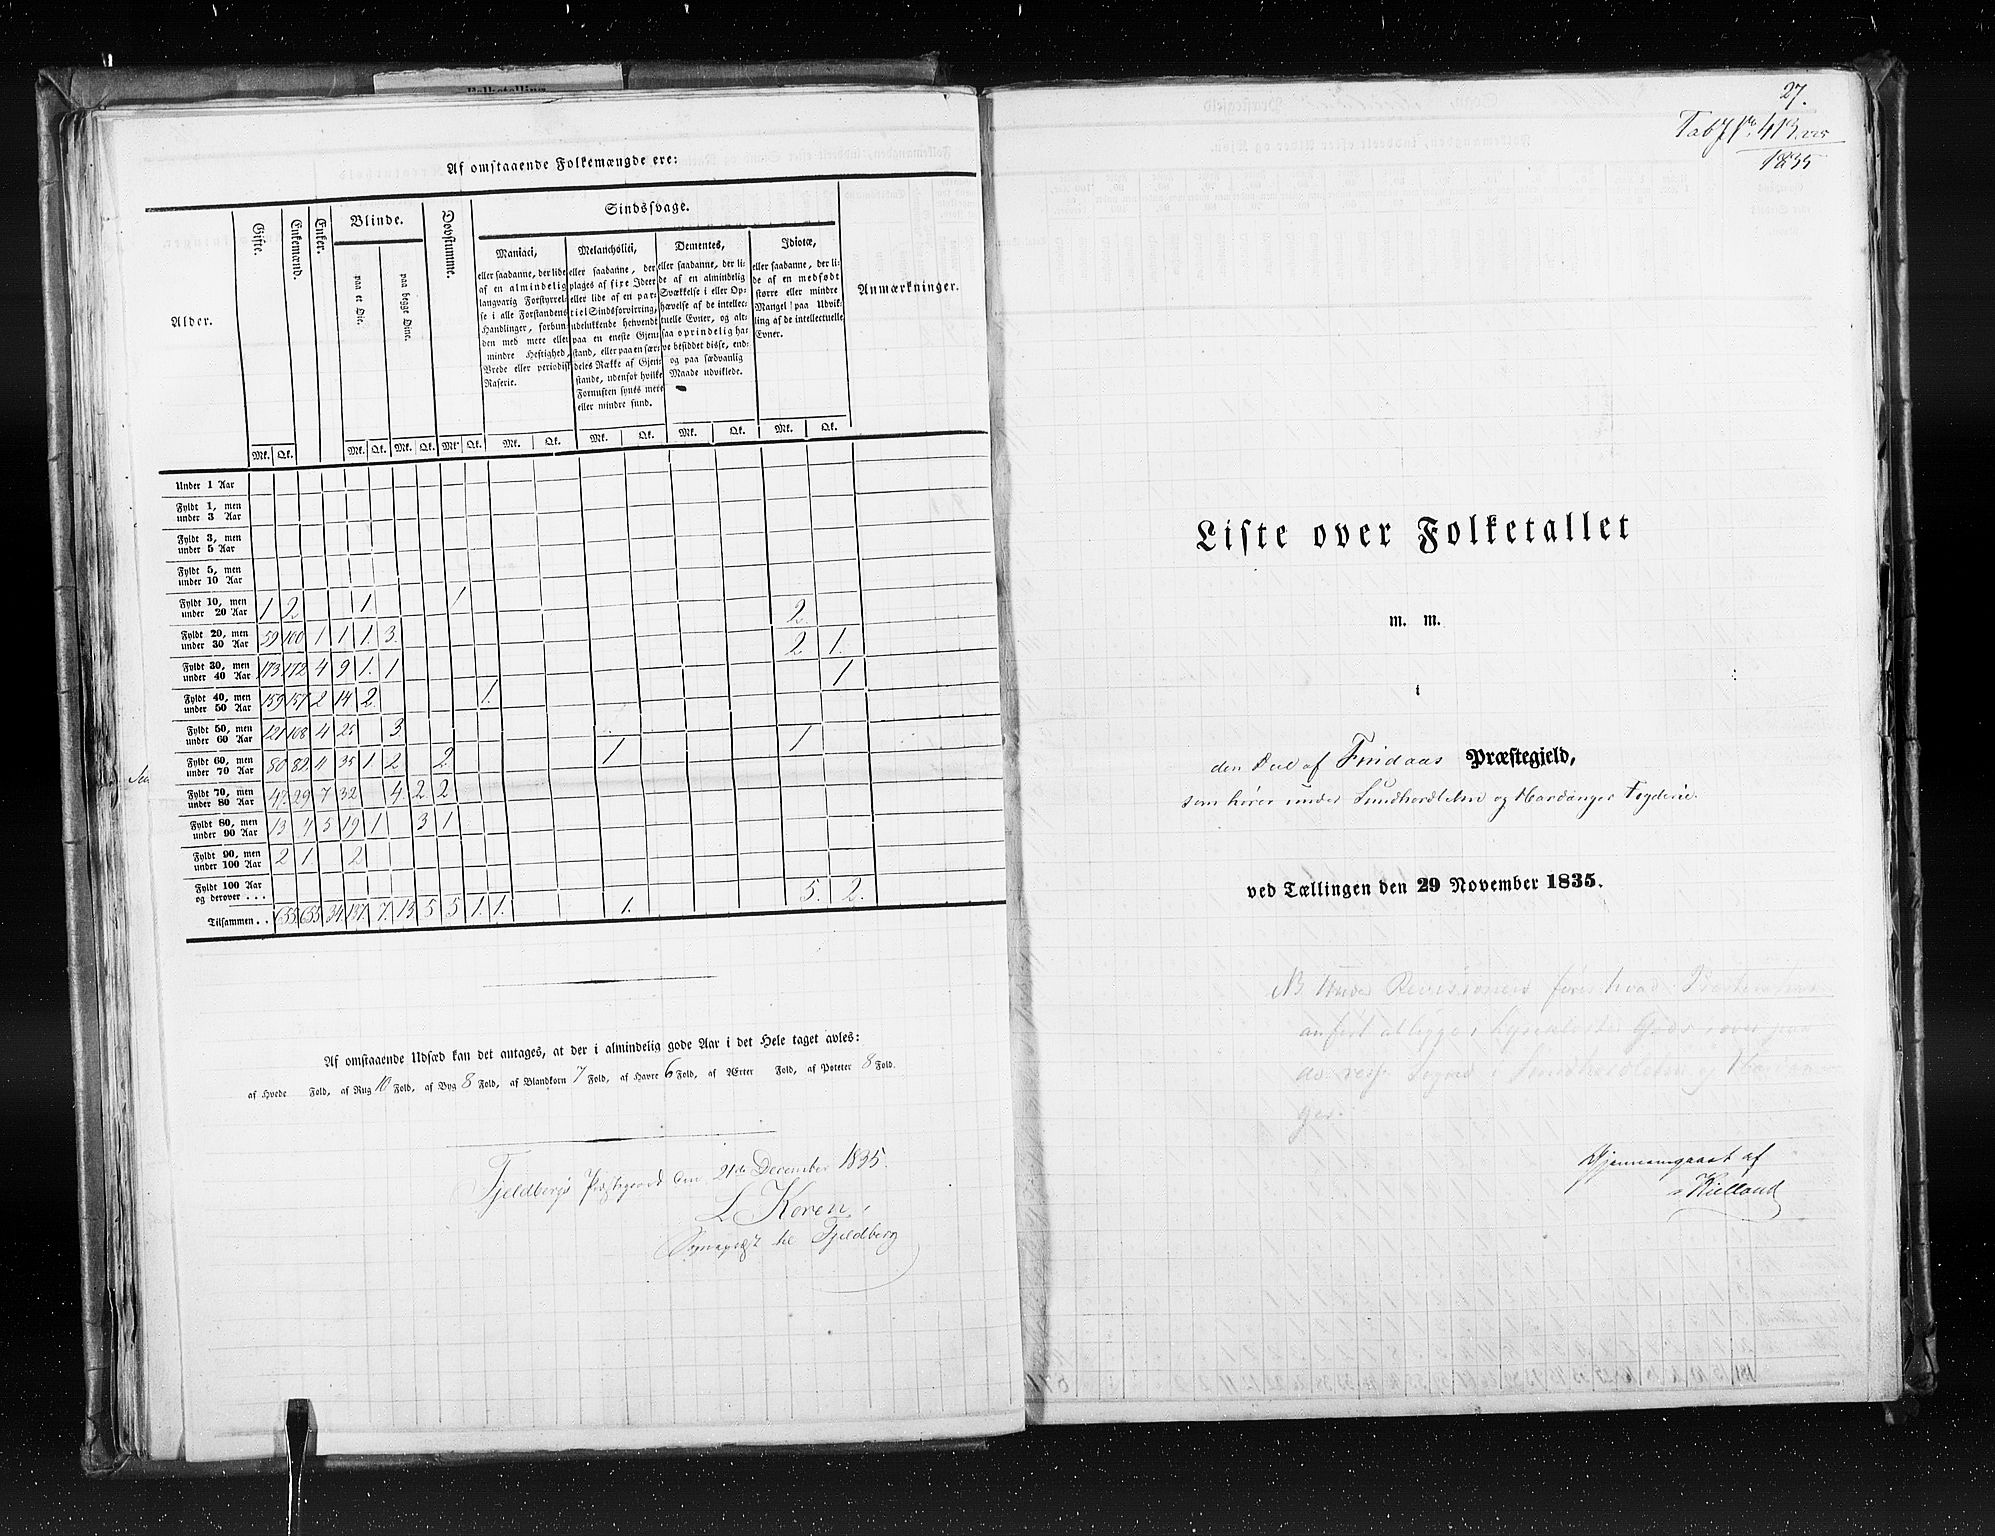 RA, Census 1835, vol. 7: Søndre Bergenhus amt og Nordre Bergenhus amt, 1835, p. 27